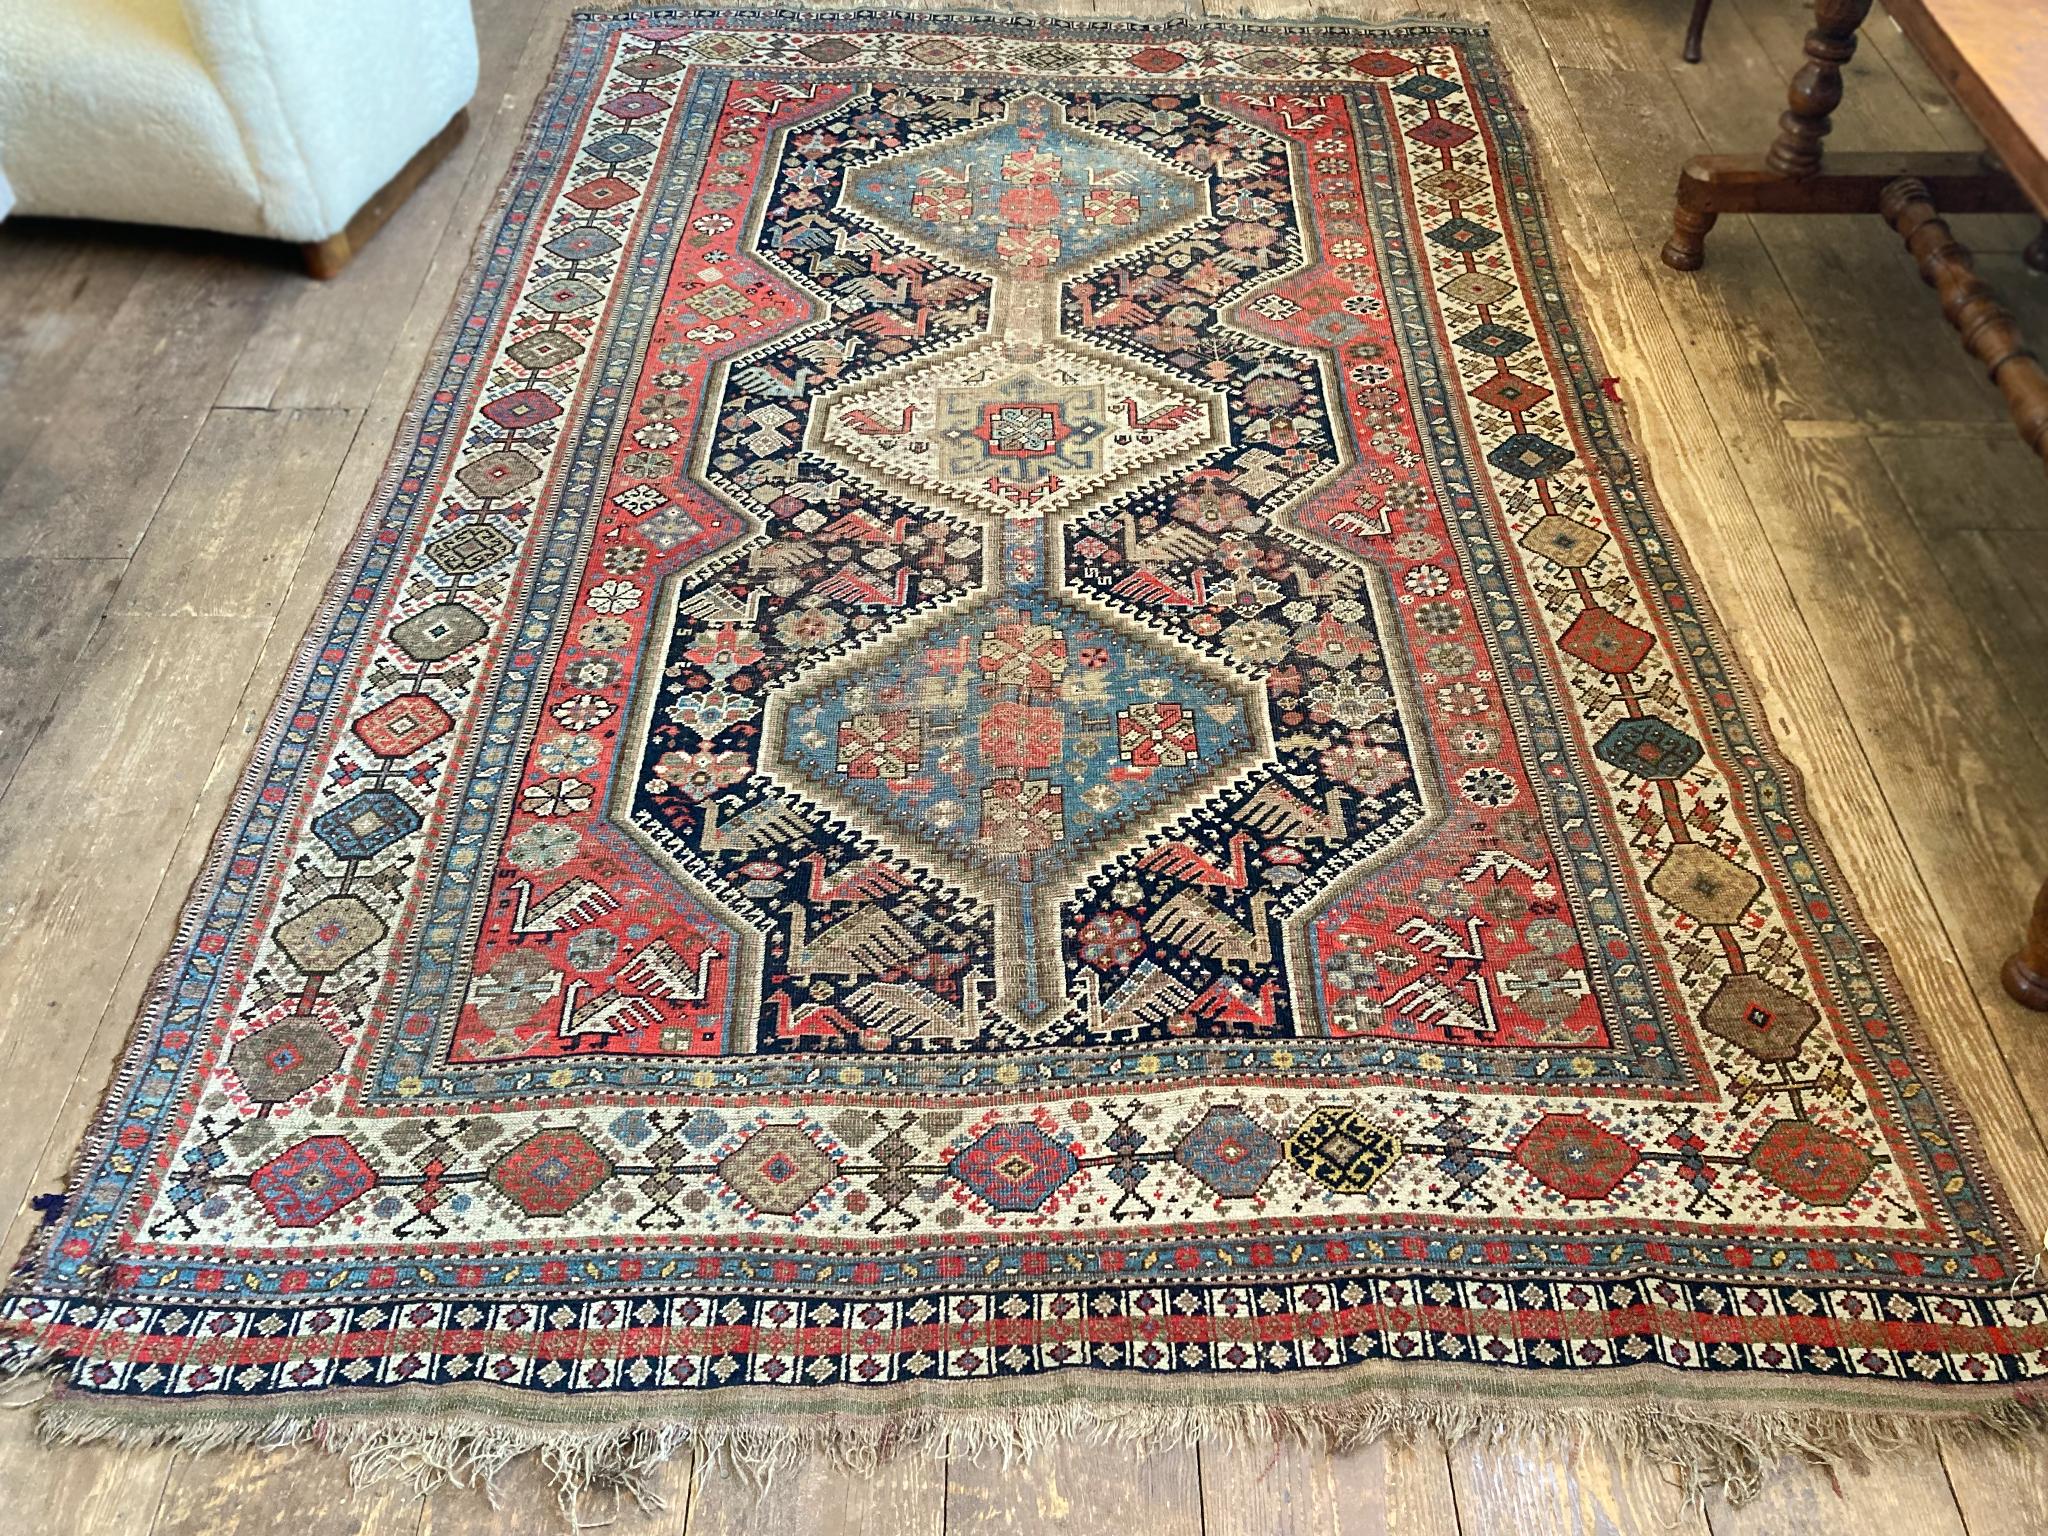 Handgewebter Shiraz-Teppich aus dem ersten Viertel des 20. Jahrhunderts. Das Muster besteht aus drei zentralen Medaillons, die von Blumen und Pfauen umgeben sind, und einer Reihe von Bordüren mit geometrischen Mustern, die alle in einer reichen